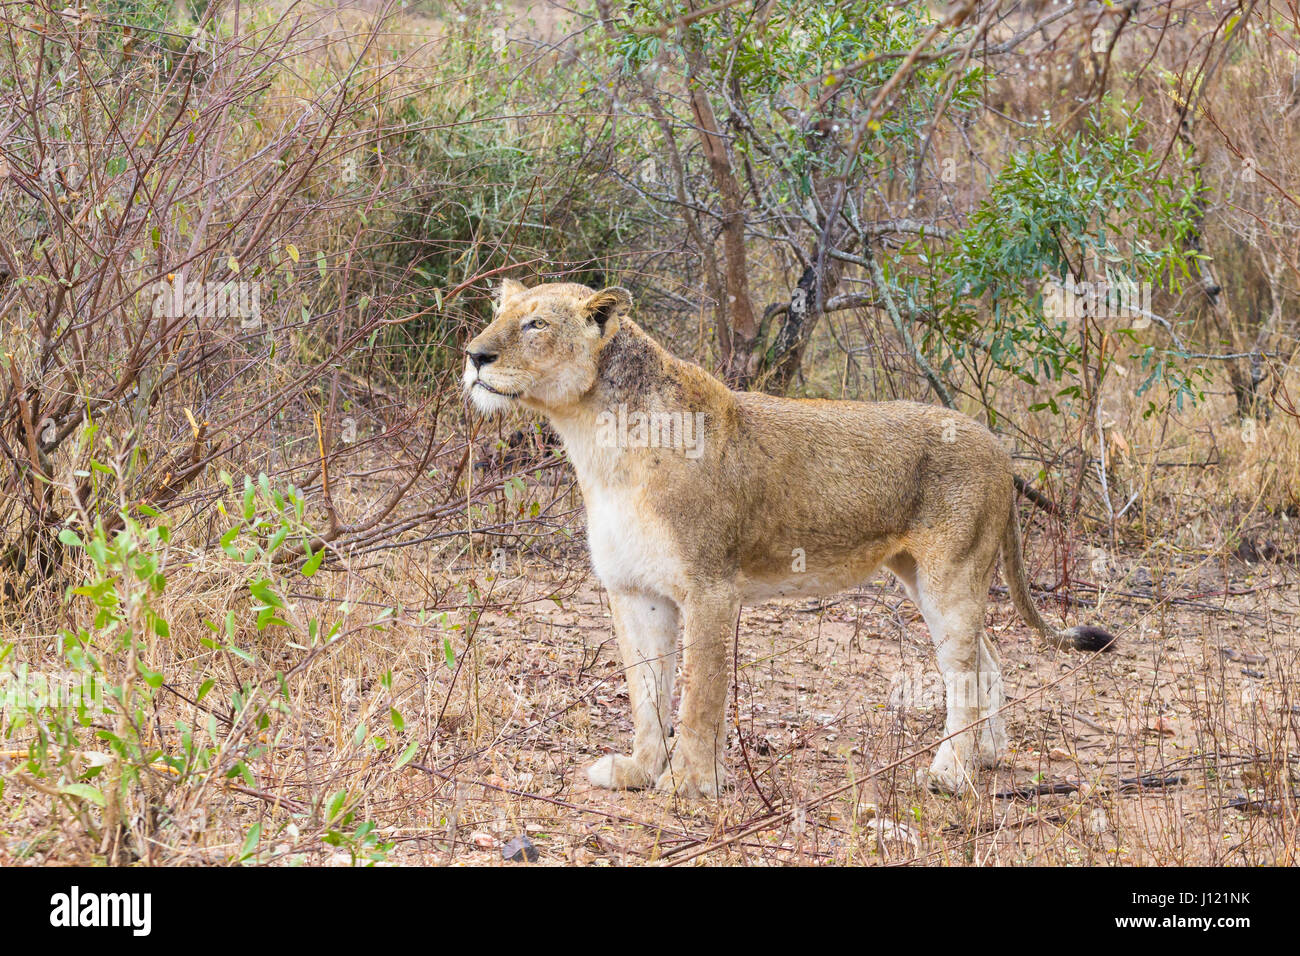 Löwe von Krüger Nationalpark, Südafrika. Afrikanische Tierwelt. Tiere in der Natur. Stockfoto